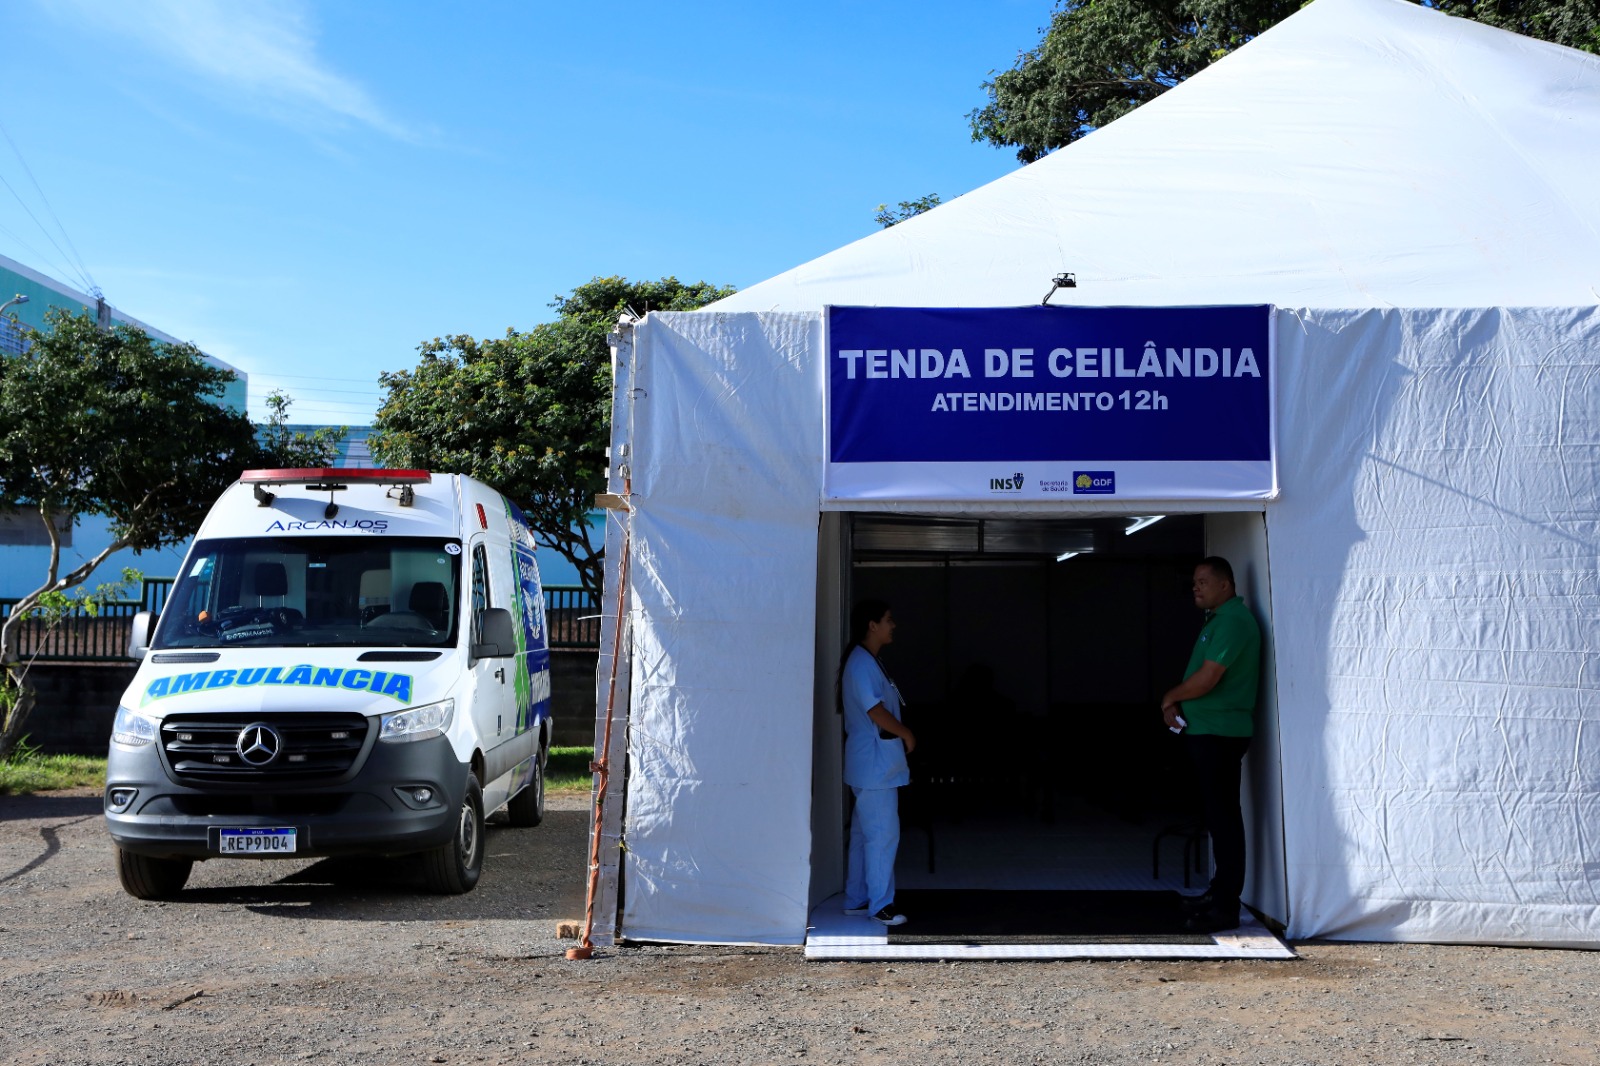 Atendimento a pacientes com suspeita de dengue é reforçado com nova tenda em Ceilândia